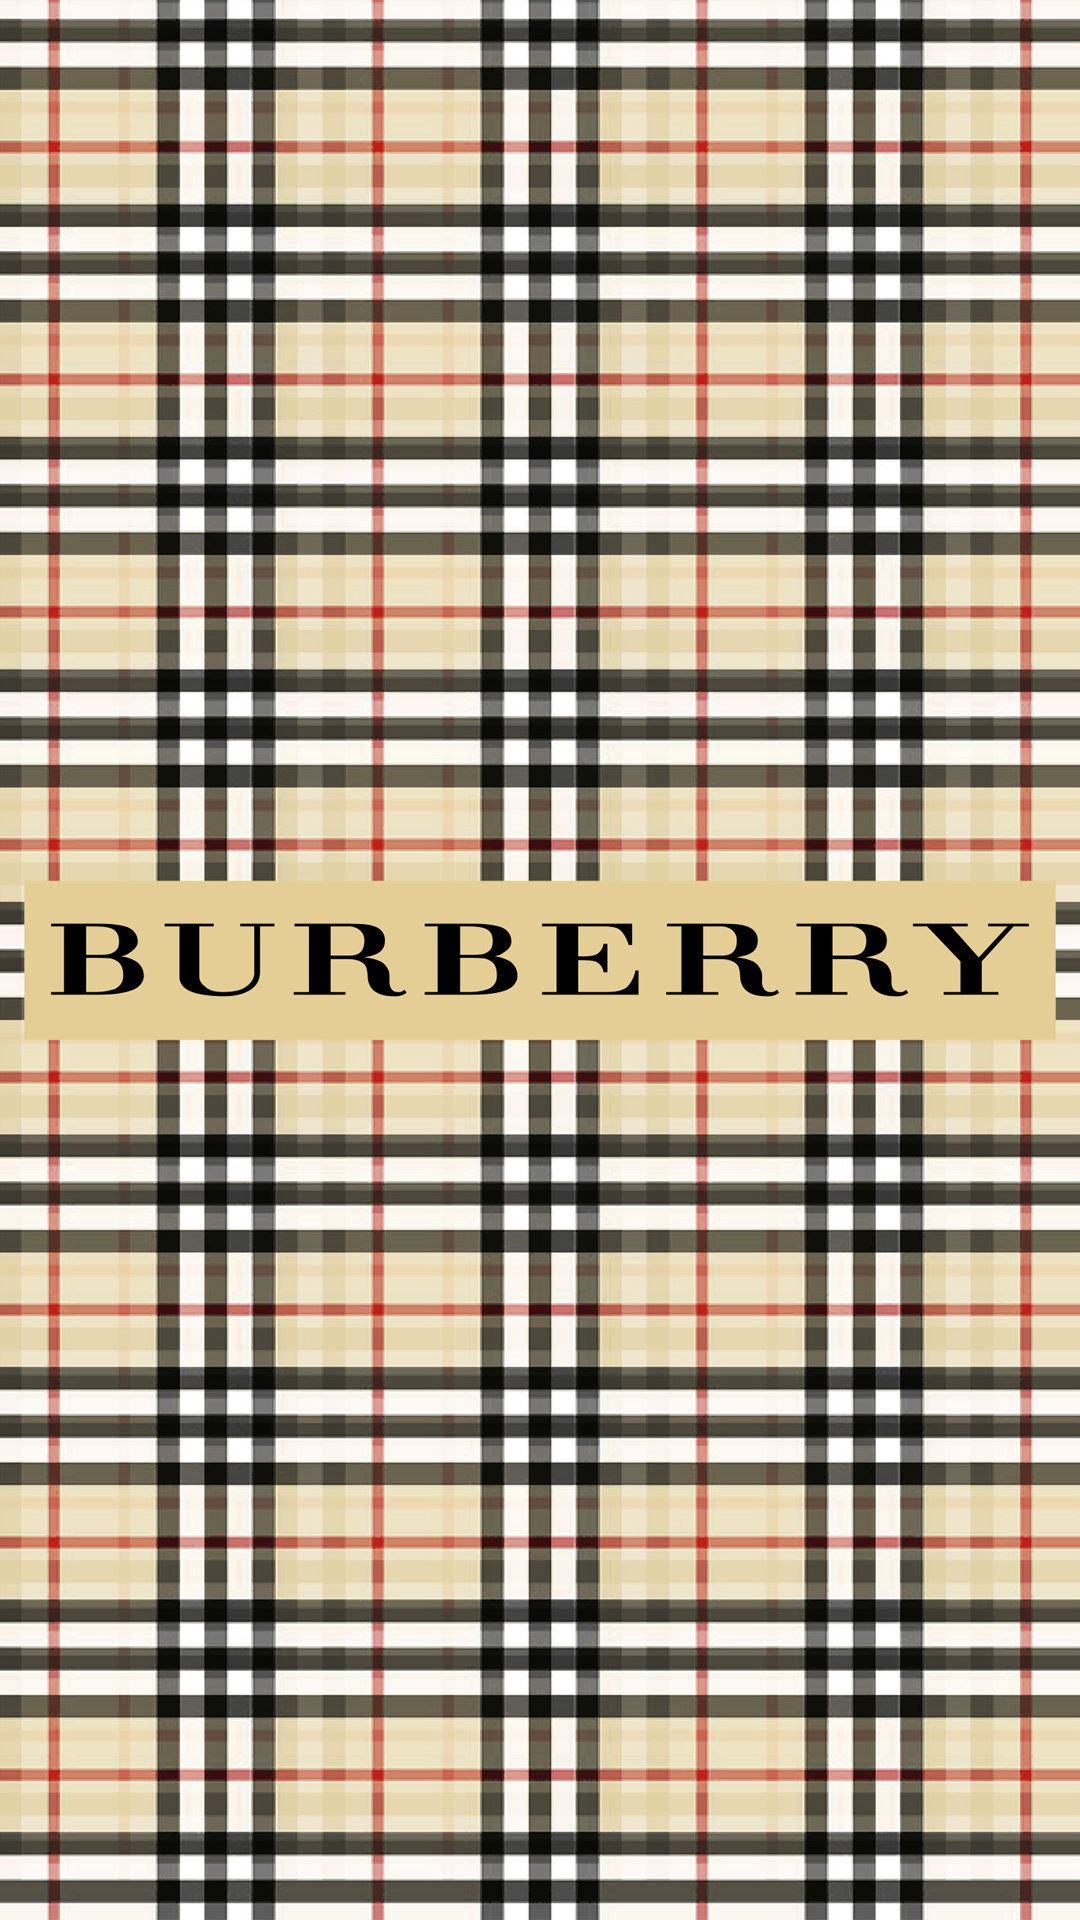 Burberry Wallpapers (más de 81 imágenes en la colección) Página 2